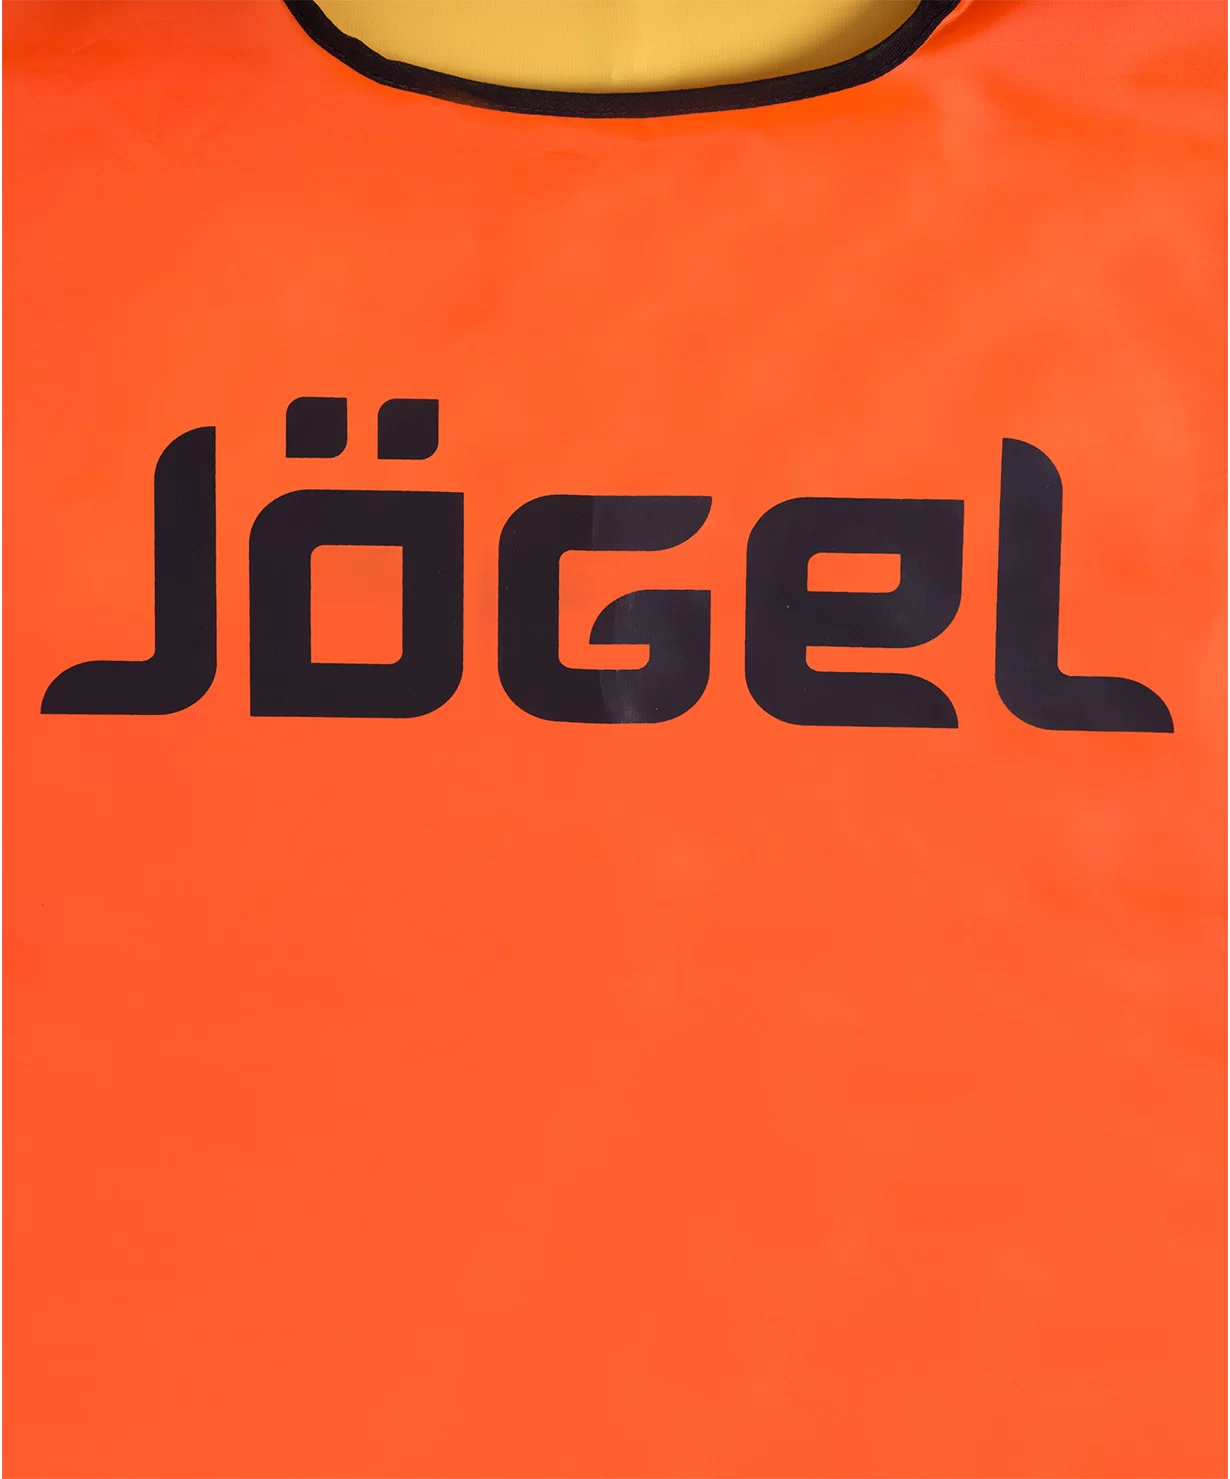 Фото Манишка двустороння Jögel JBIB-2001 взрослая желтый/оранжевый 12367 со склада магазина СпортСЕ